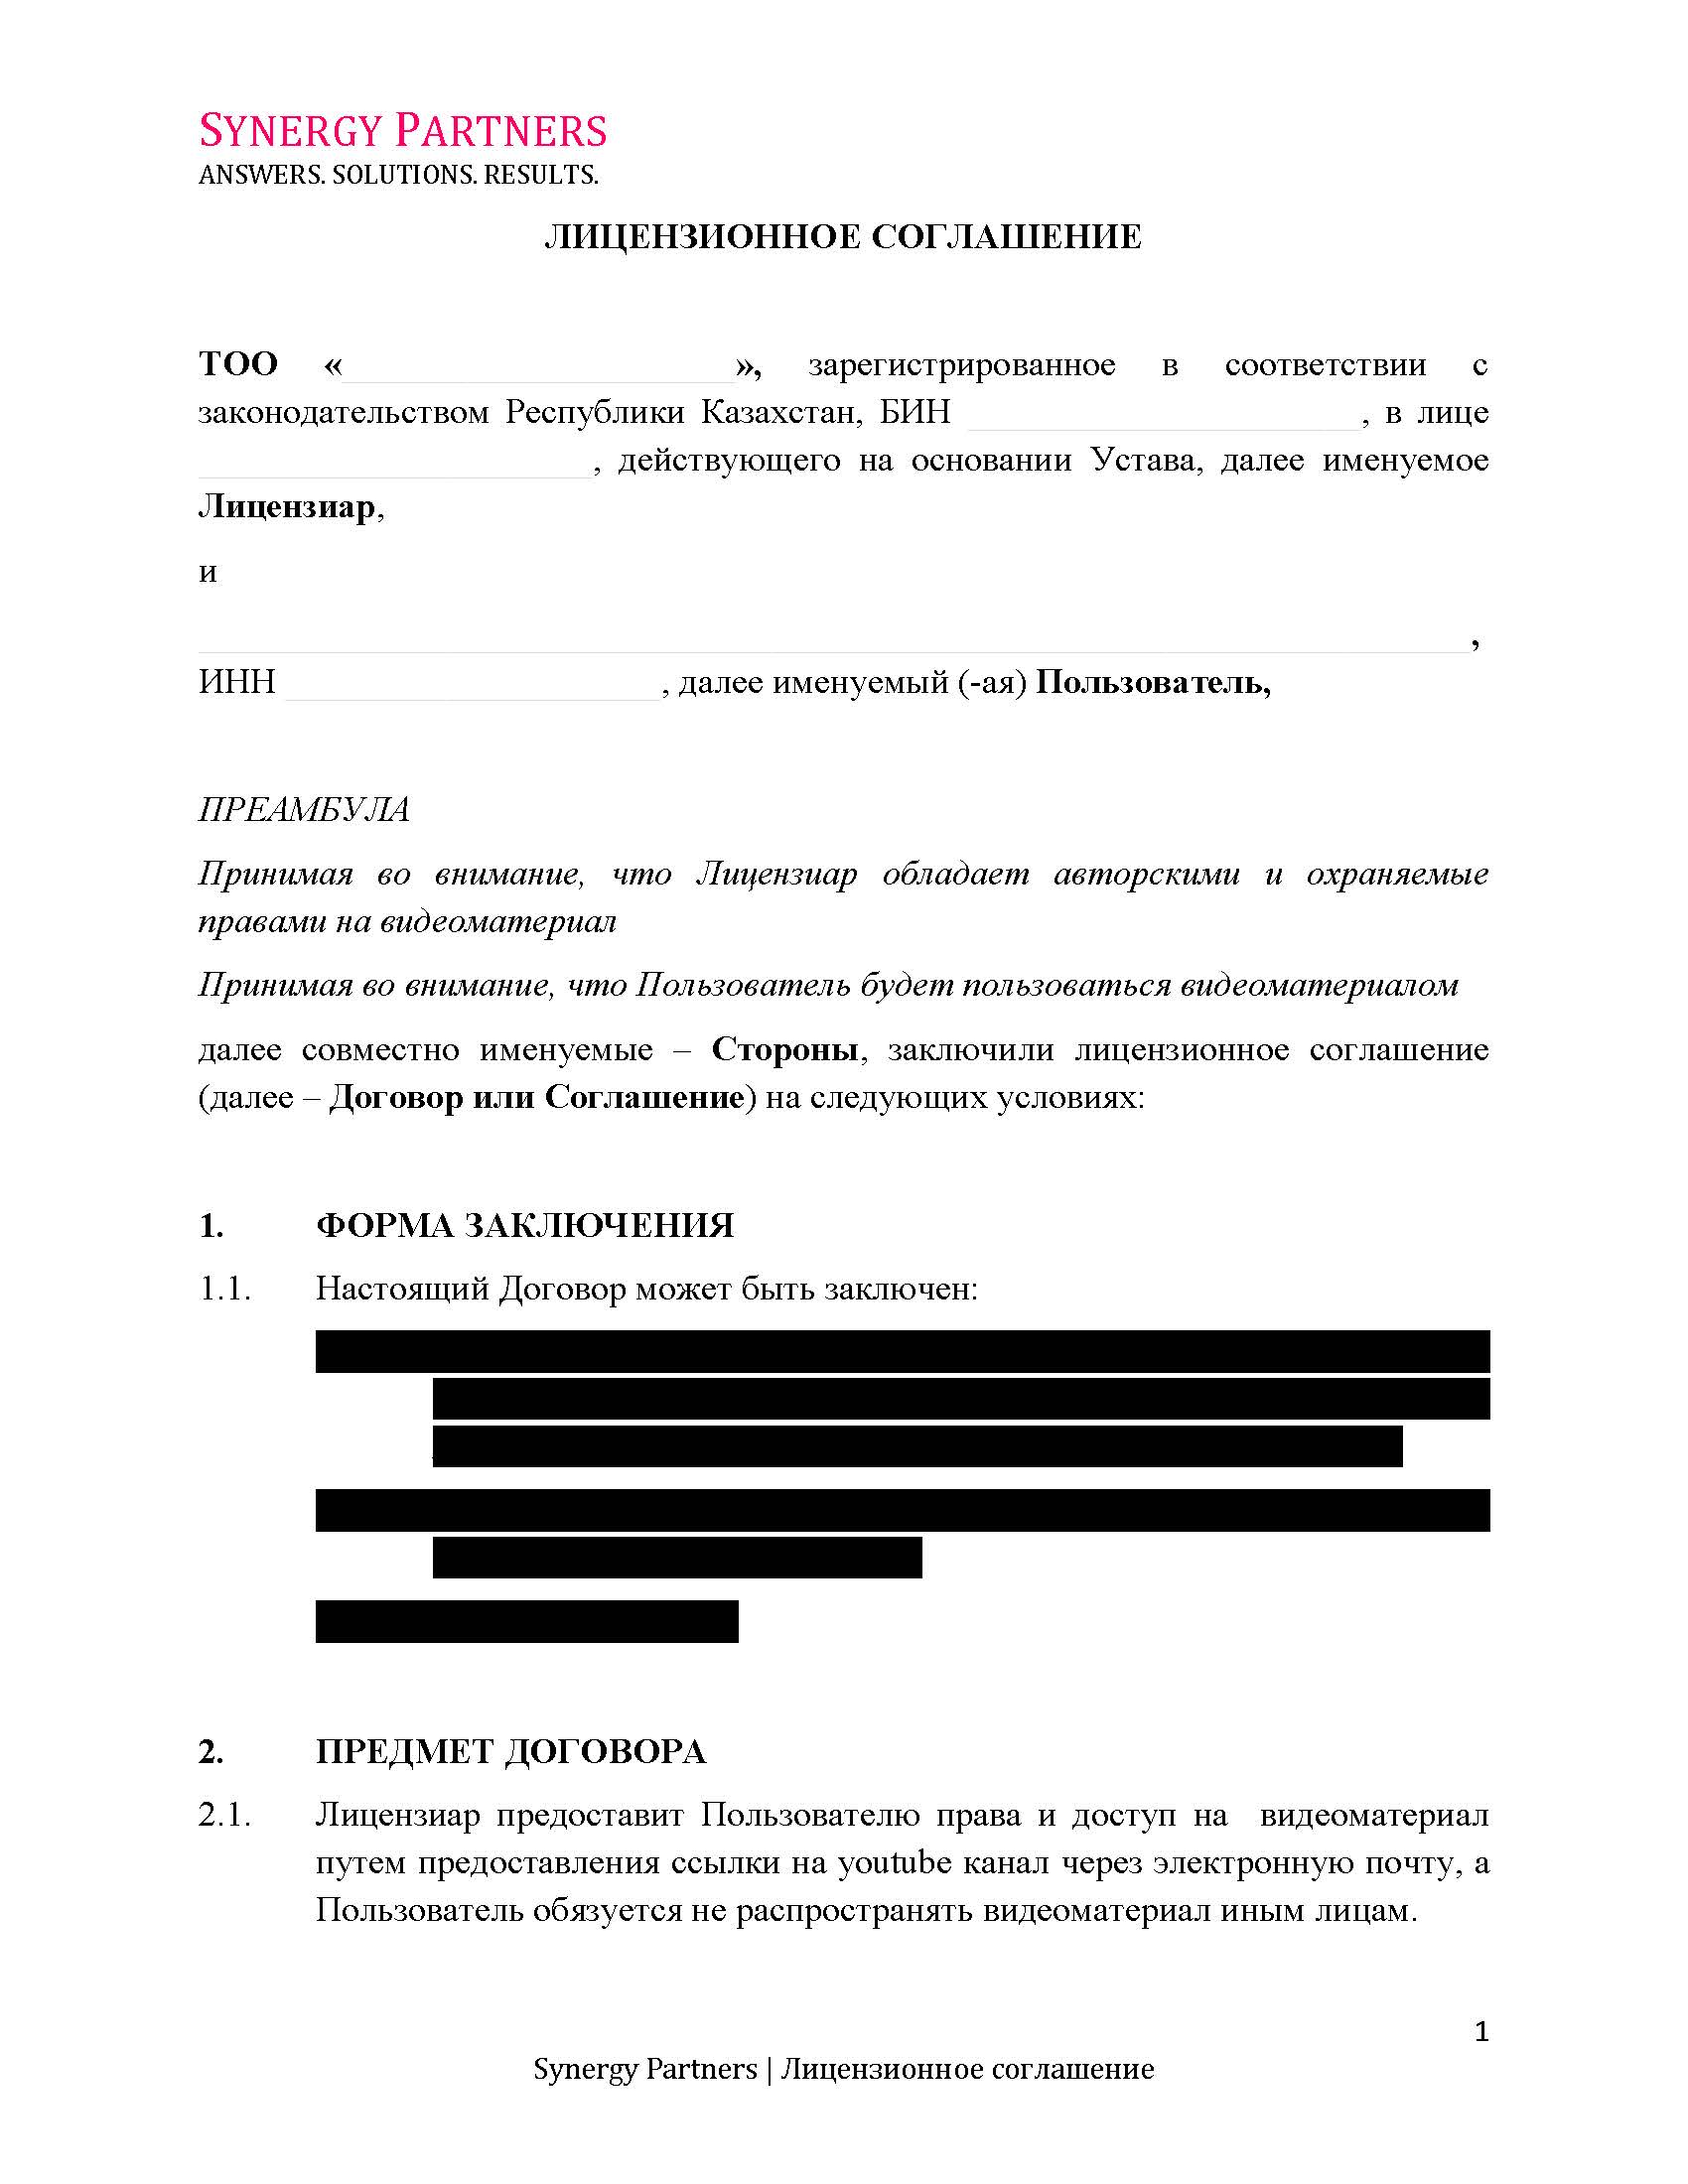 Лицензионный договор  | documentter.kz в Казахстане 